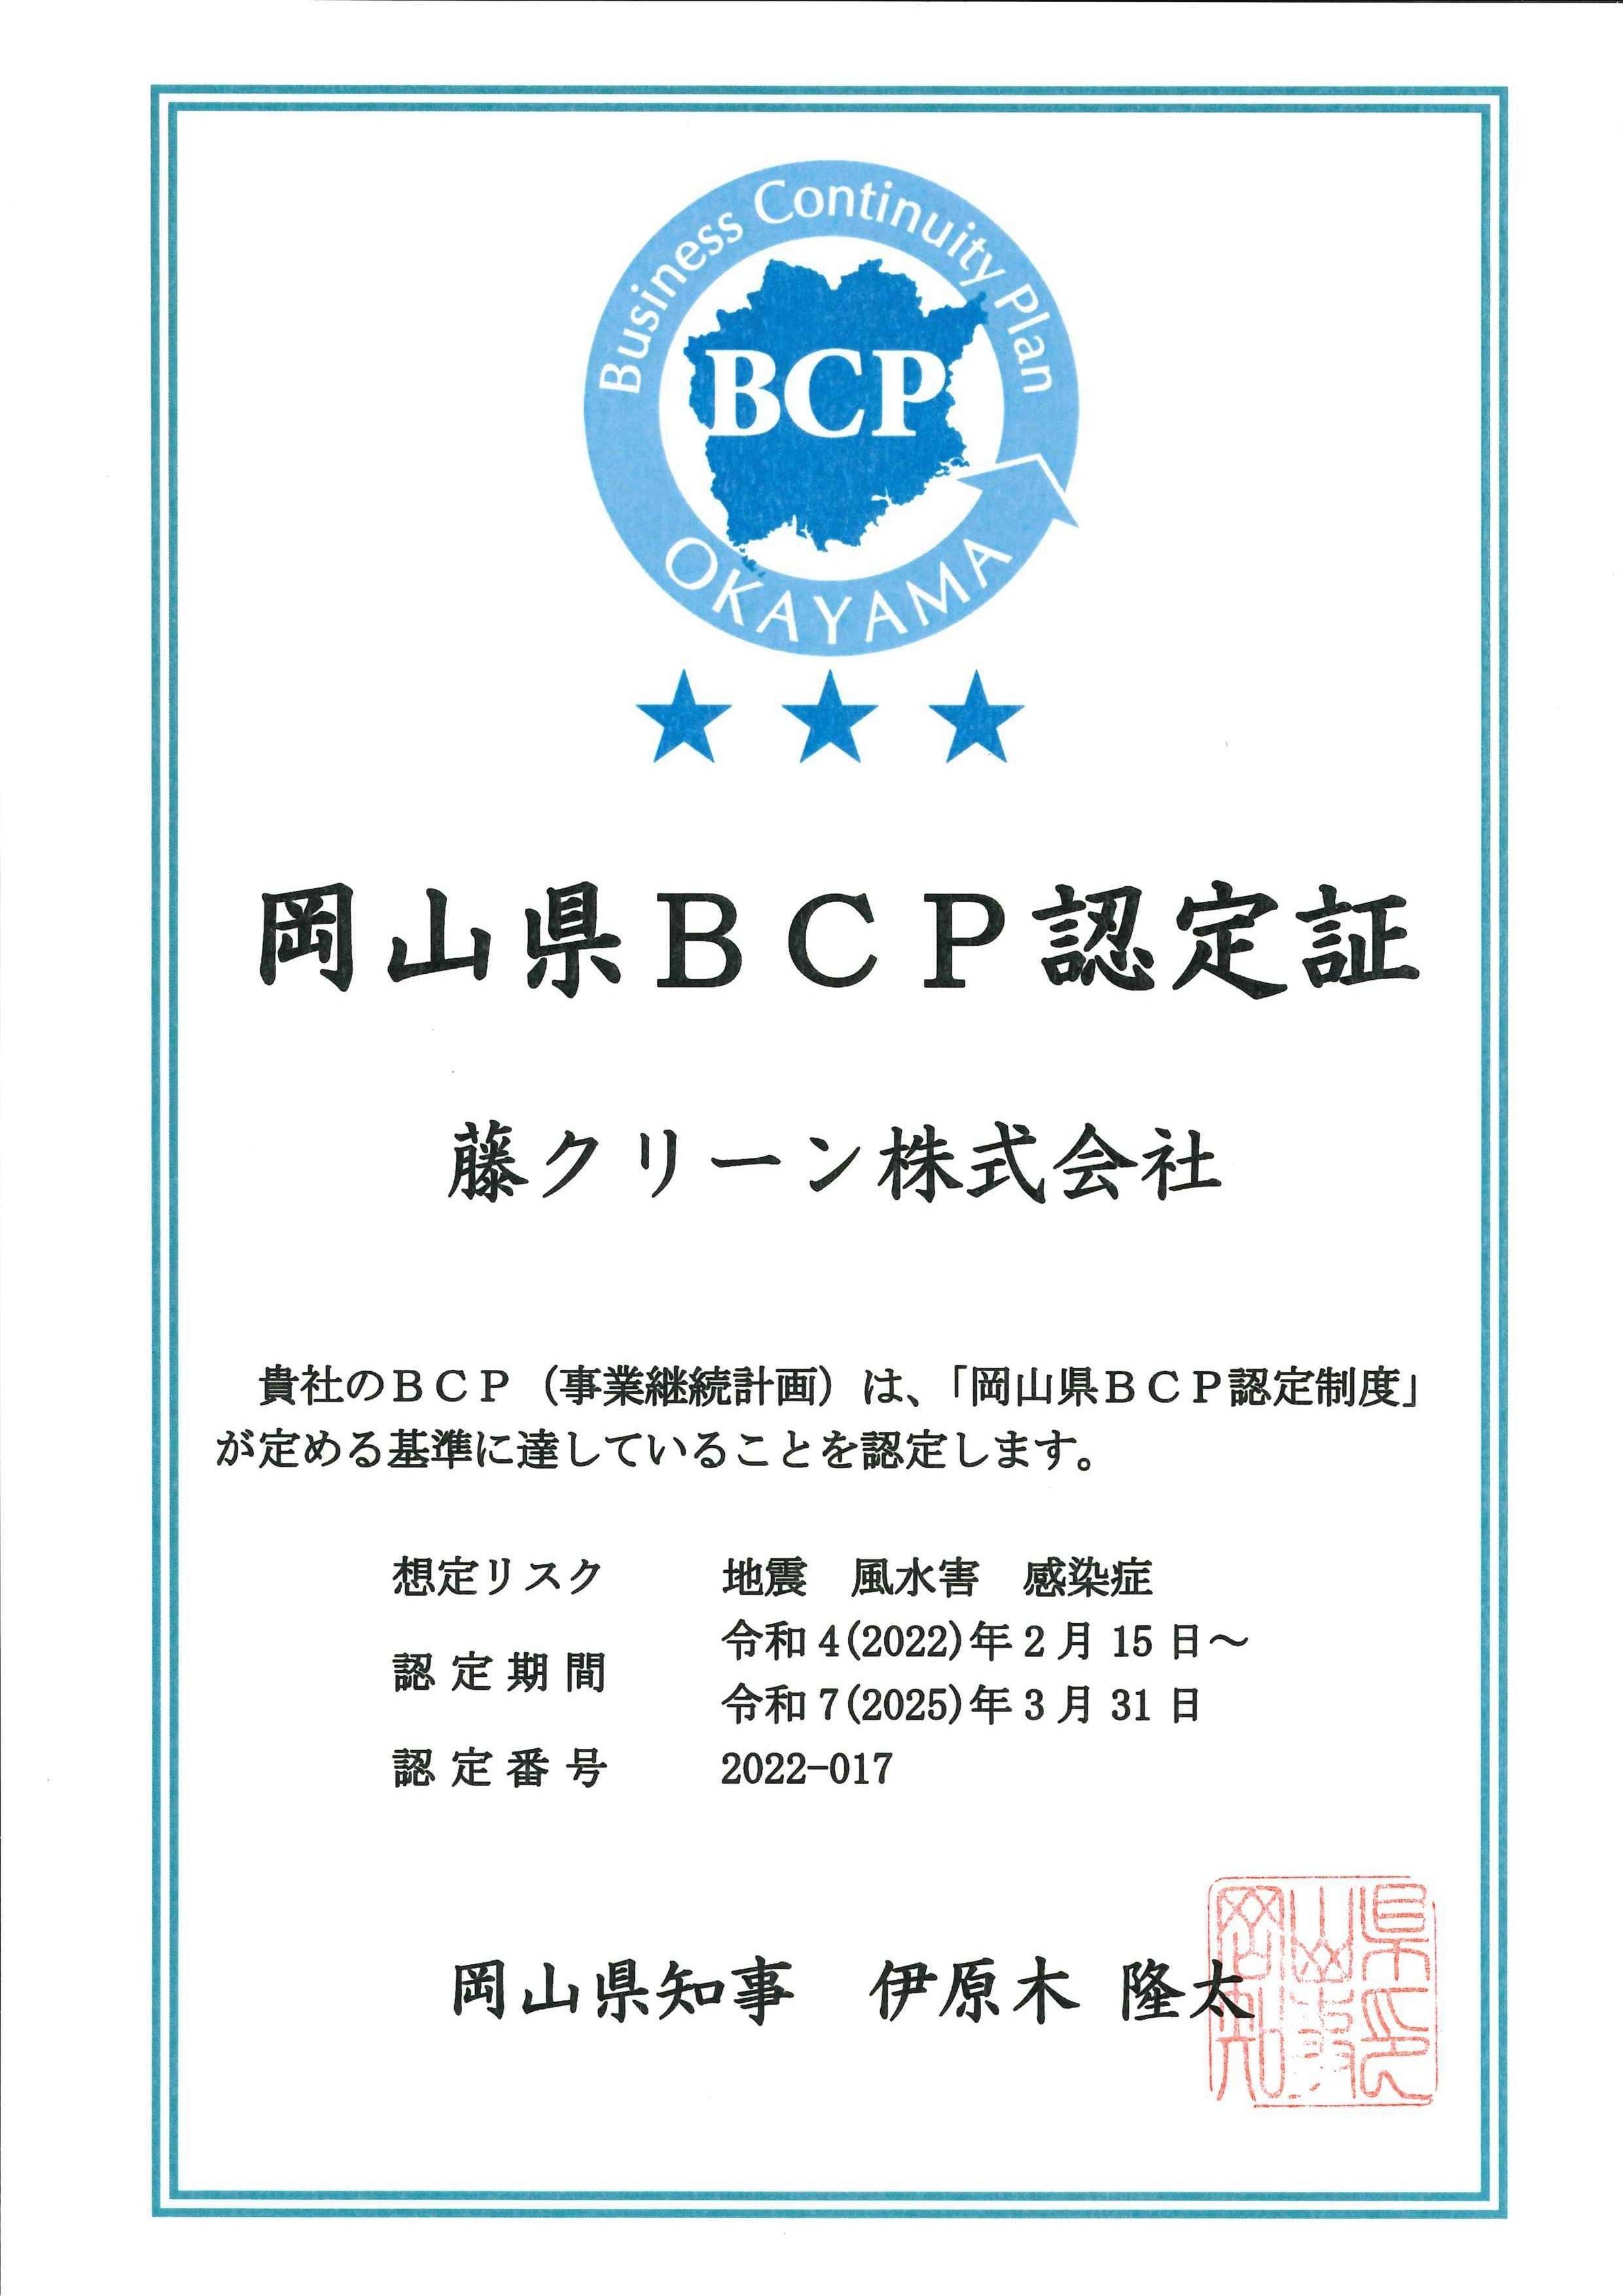 藤クリーンは、「岡山県BCP認定制度」の認定をいただきました。